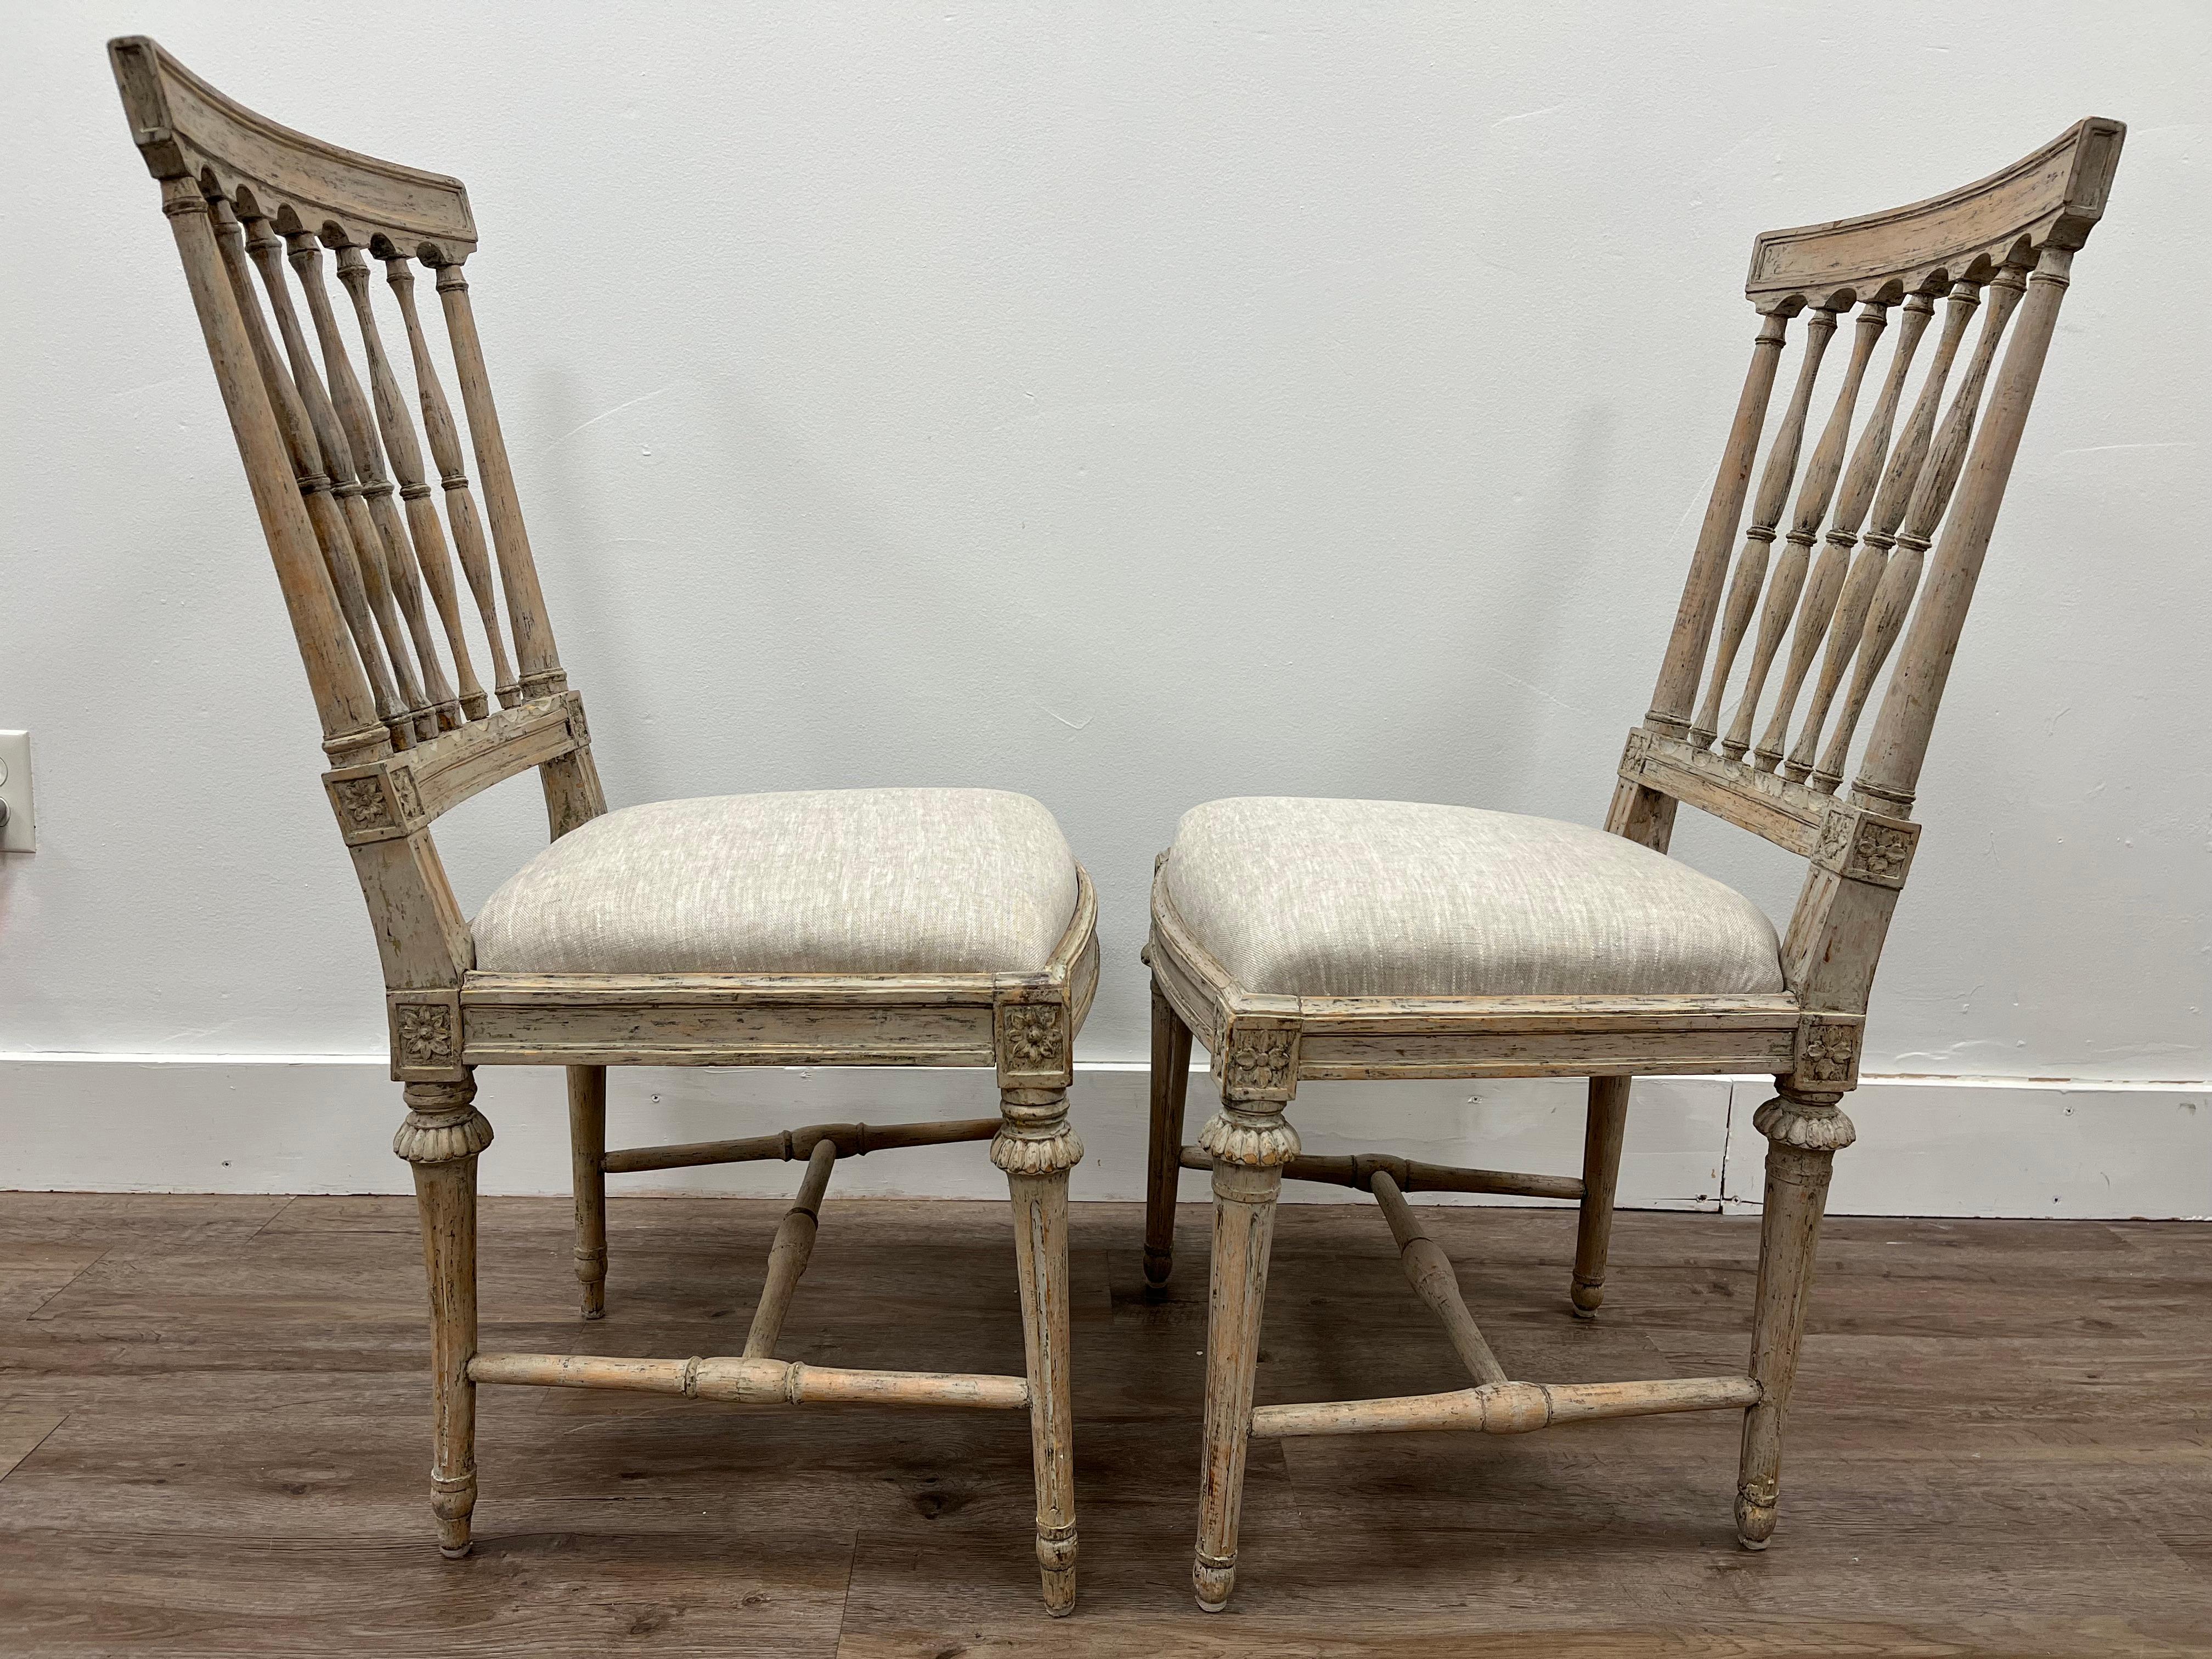 Zwei ähnliche schwedische Gustavianische Stühle, hergestellt in Stockholm. Ein Stuhl von Johan Erik Hollander (1748-1813), signiert IEH. Der andere Stuhl stammt von John Hammarstrom (tätig 1794-1812) und ist mit IHS signiert. Ein Stuhl trägt noch